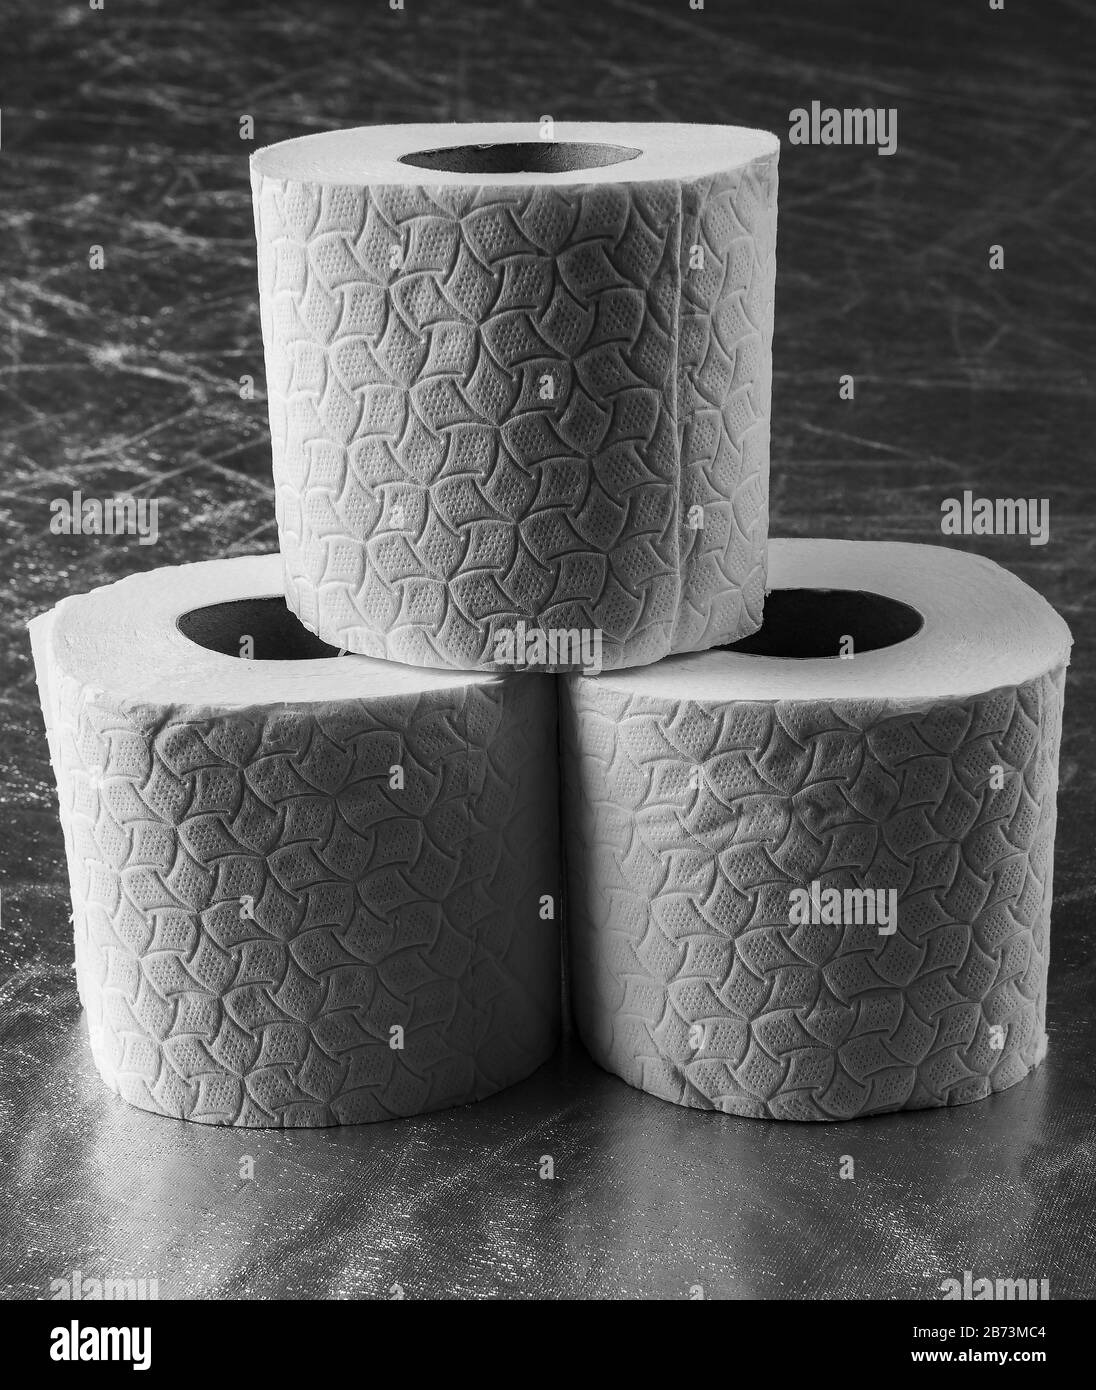 Ein Bild von Toilettenpapier, das aufstocken kann, ist auf Coronvirus zu sehen. Stockfoto